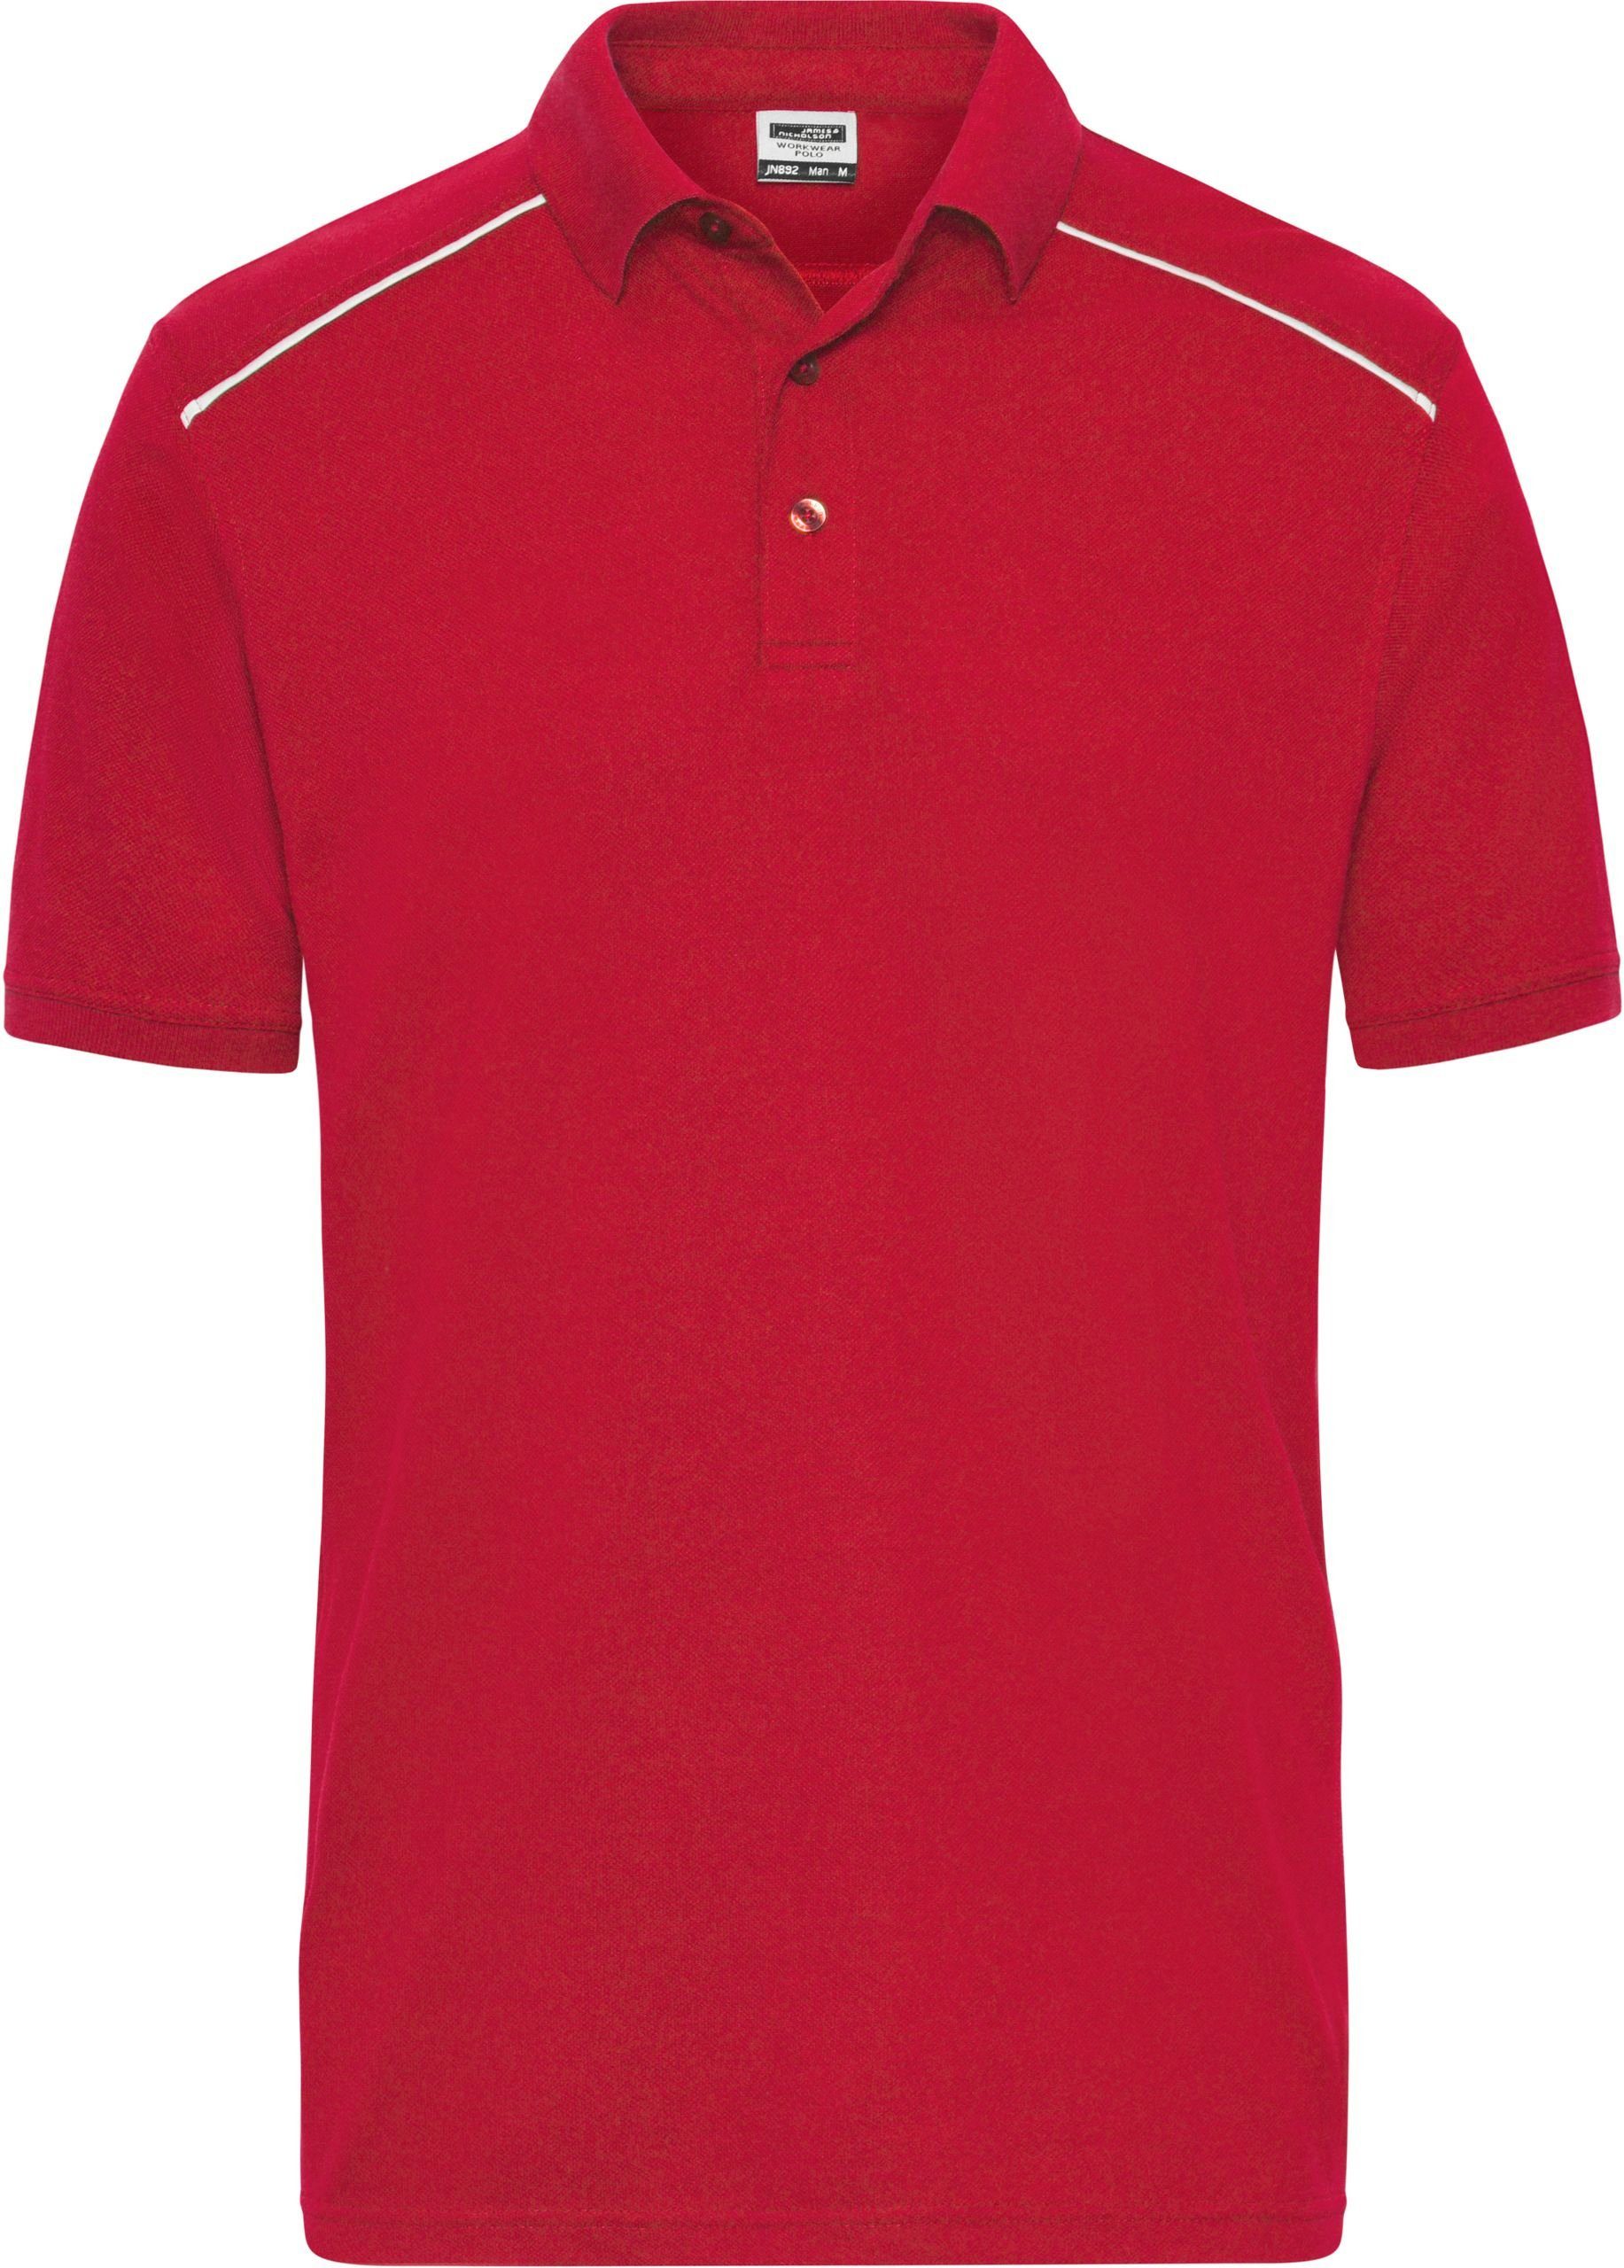 James & Nicholson Poloshirt Workwear in Übergrößen Polo -Solid- auch RED FaS50892